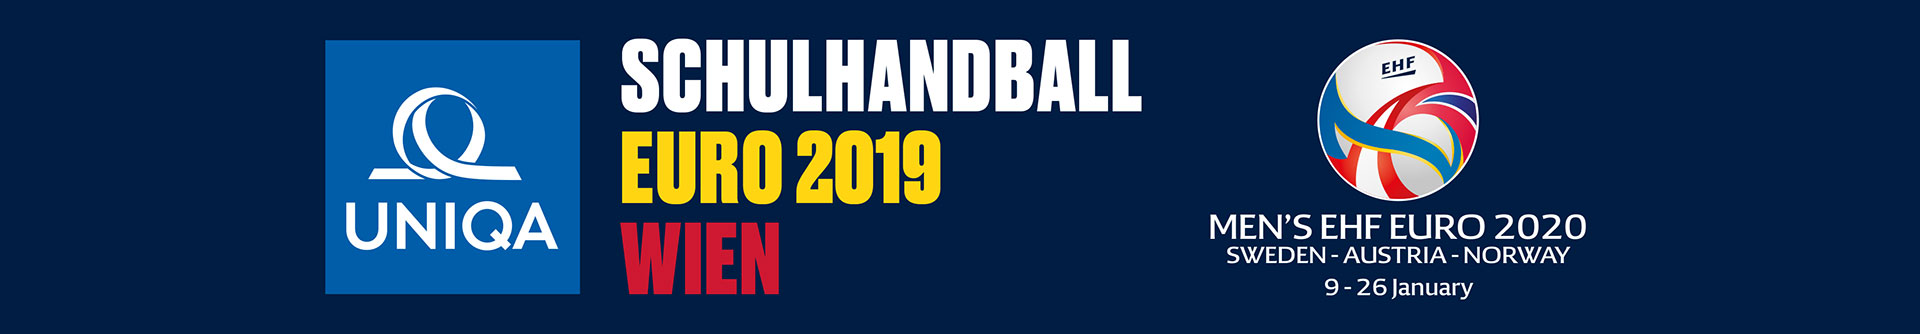 Schulhandball Euro 2019 Wien